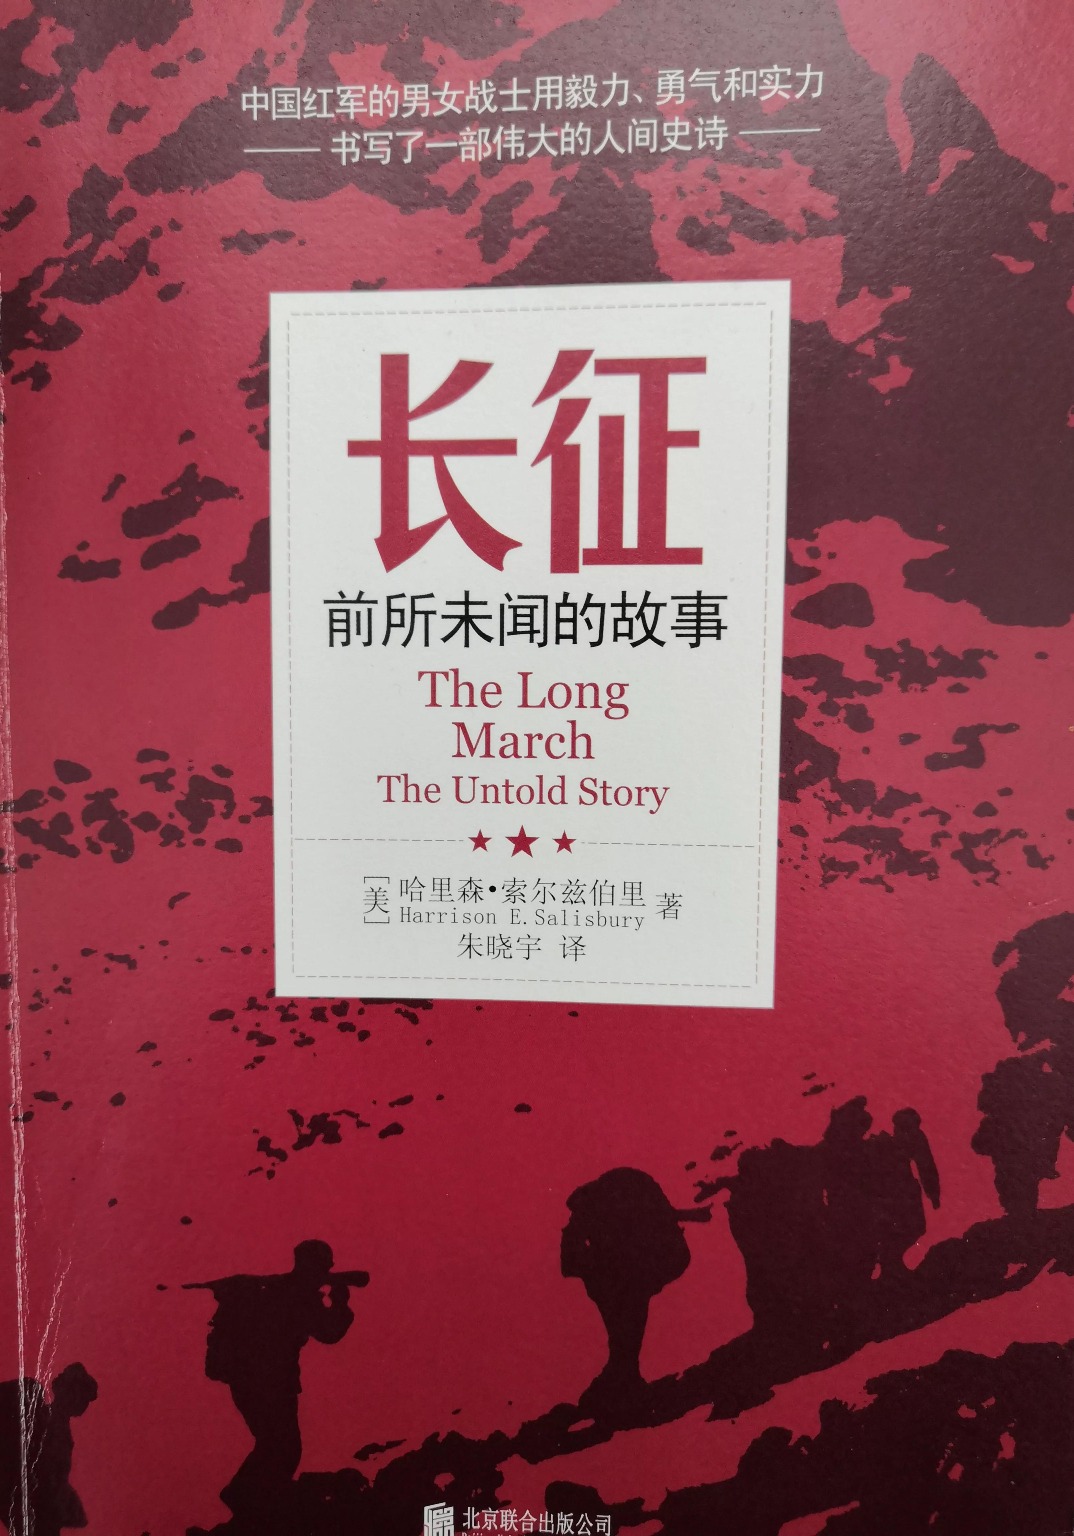 当代中国-名家-张维为看中国长征中国革命史的惨烈篇章